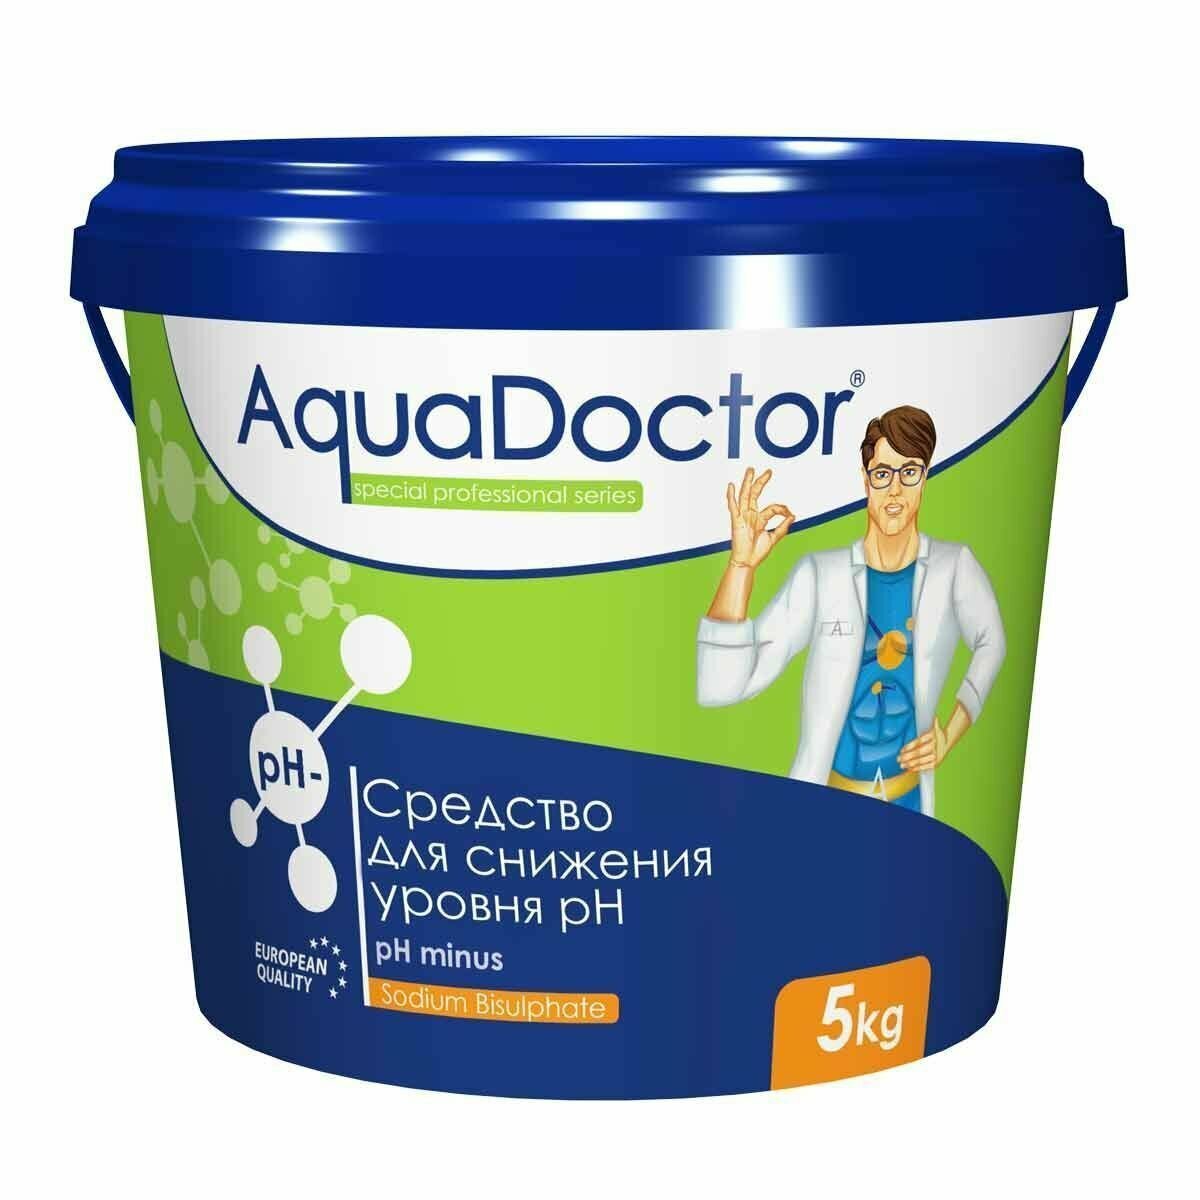 AquaDoctor pH Minus 5 кг, Средство для снижения уровня рН в бассейне